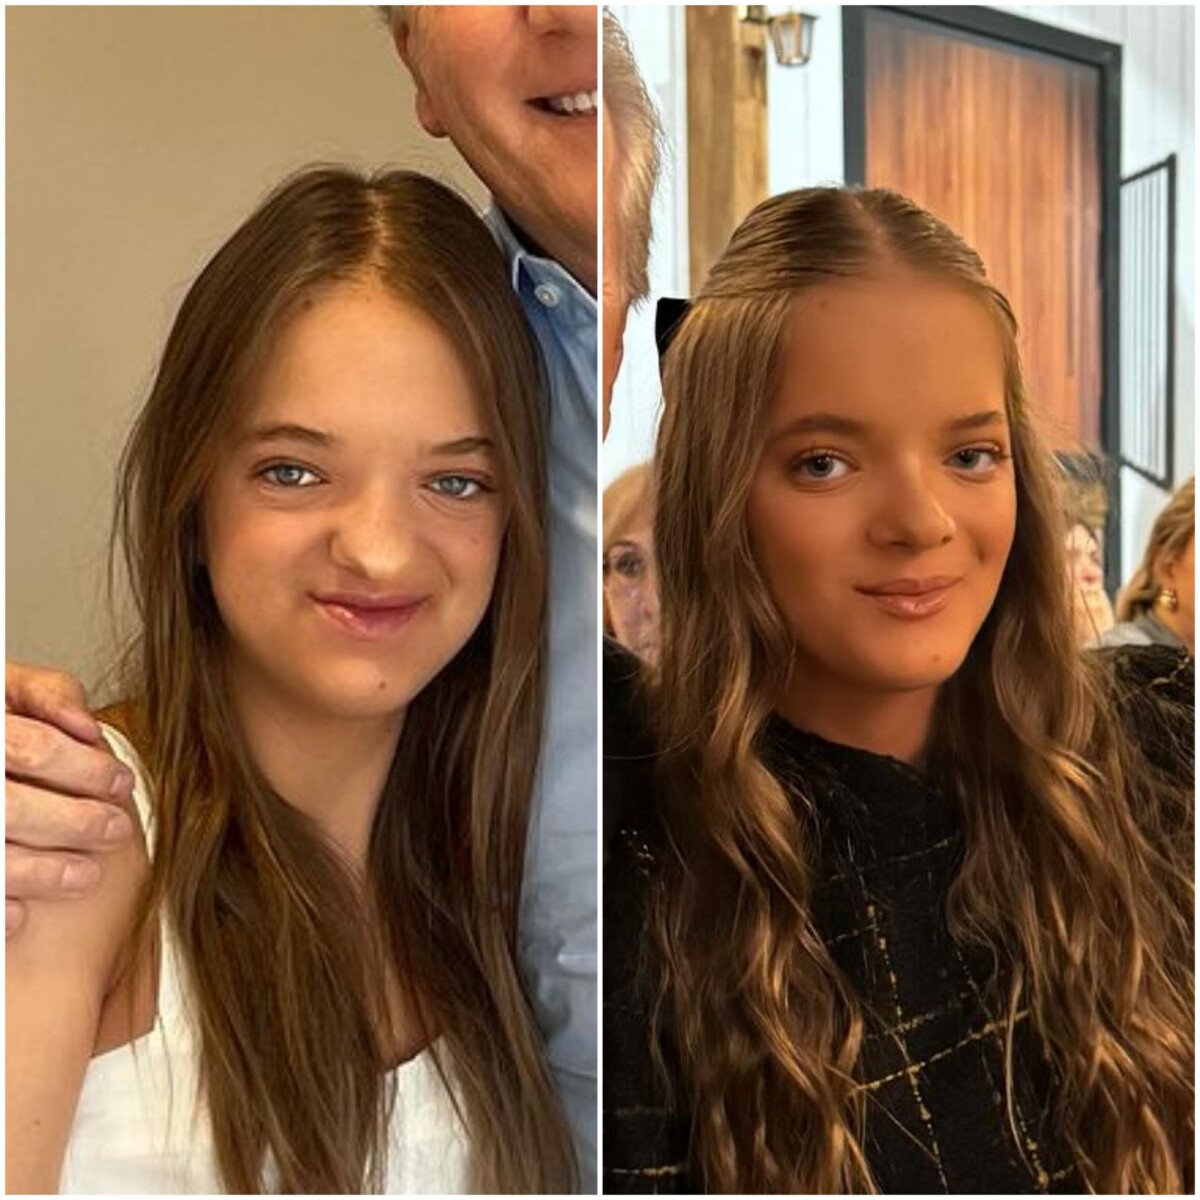 Foto: O antes e depois de Rafaella Justus impressionou a web - Purepeople